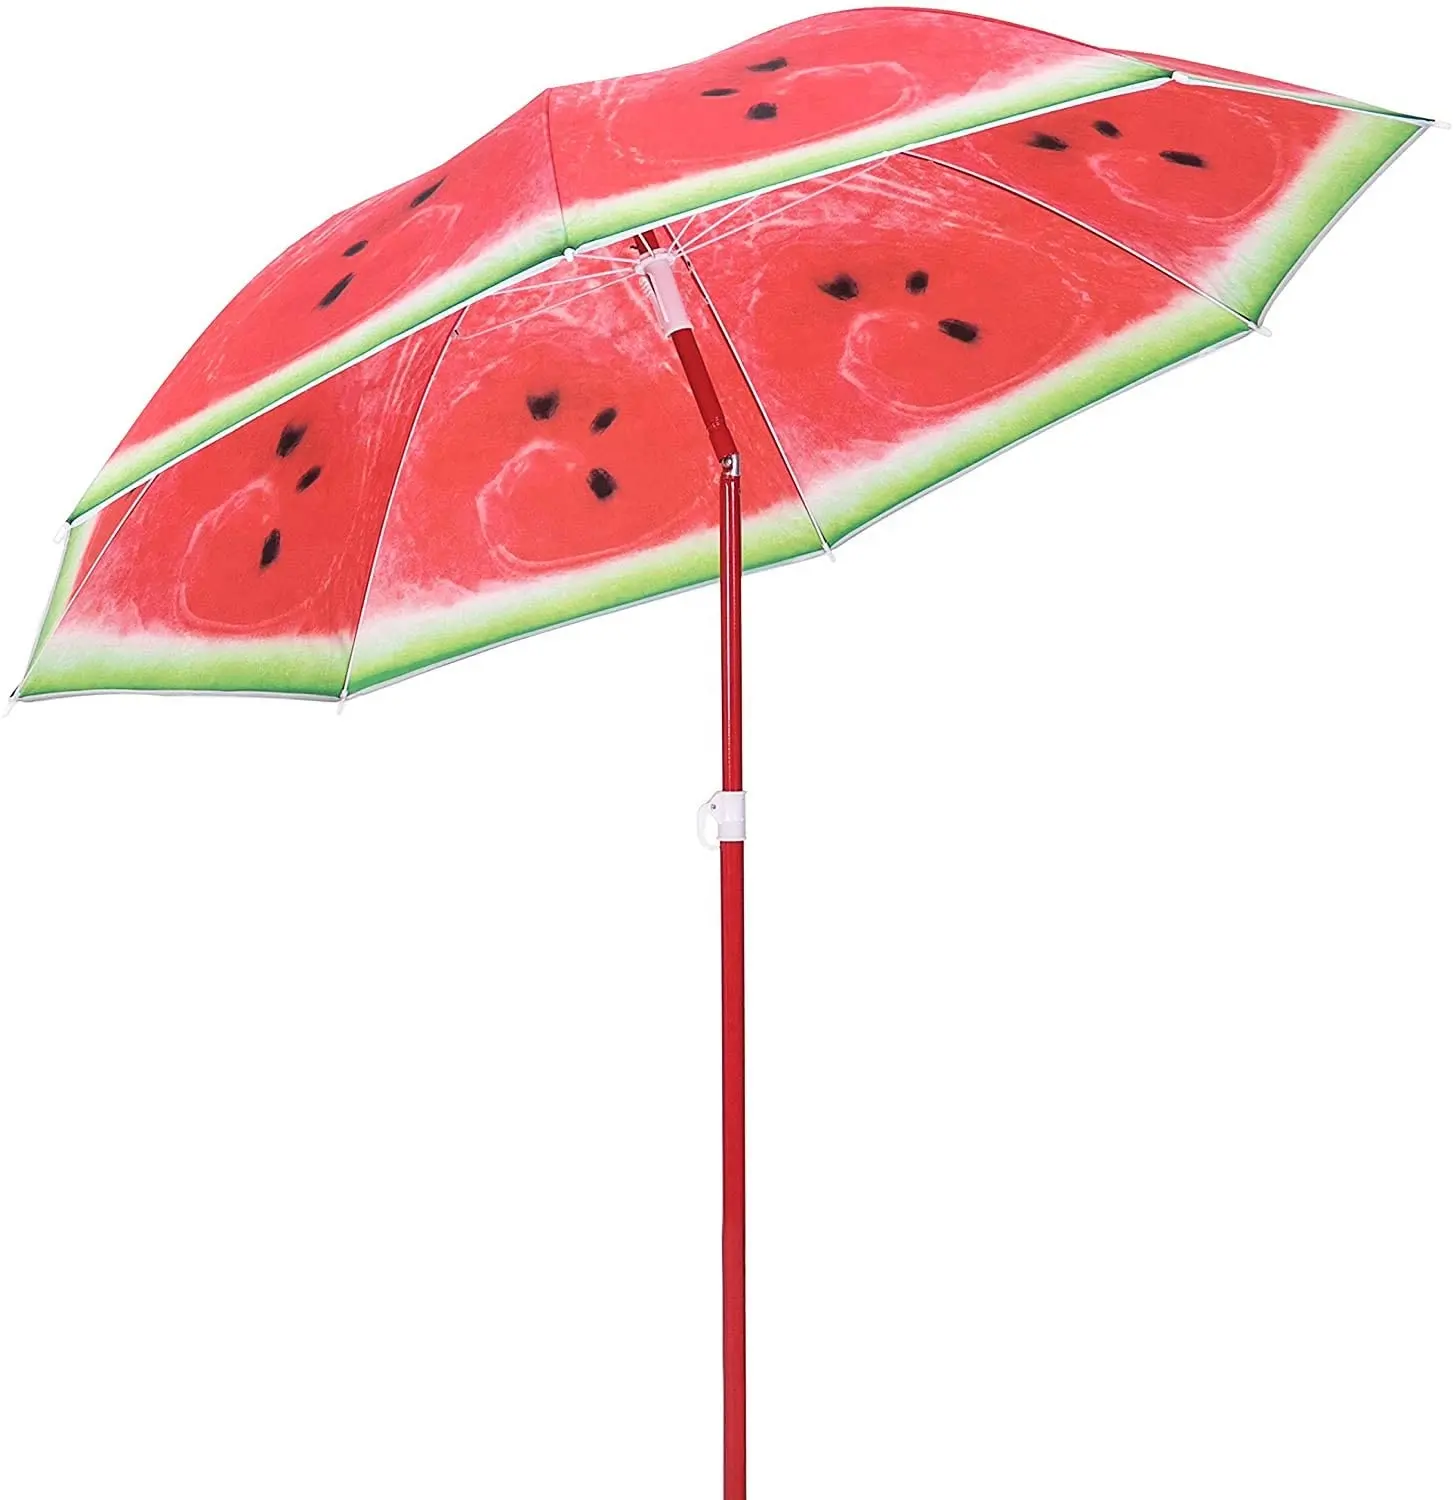 6ft açık rüzgar geçirmez bahçe güneş veranda şemsiye promosyon karpuz meyve taşınabilir seyahat manuel deniz plaj şemsiye şemsiye